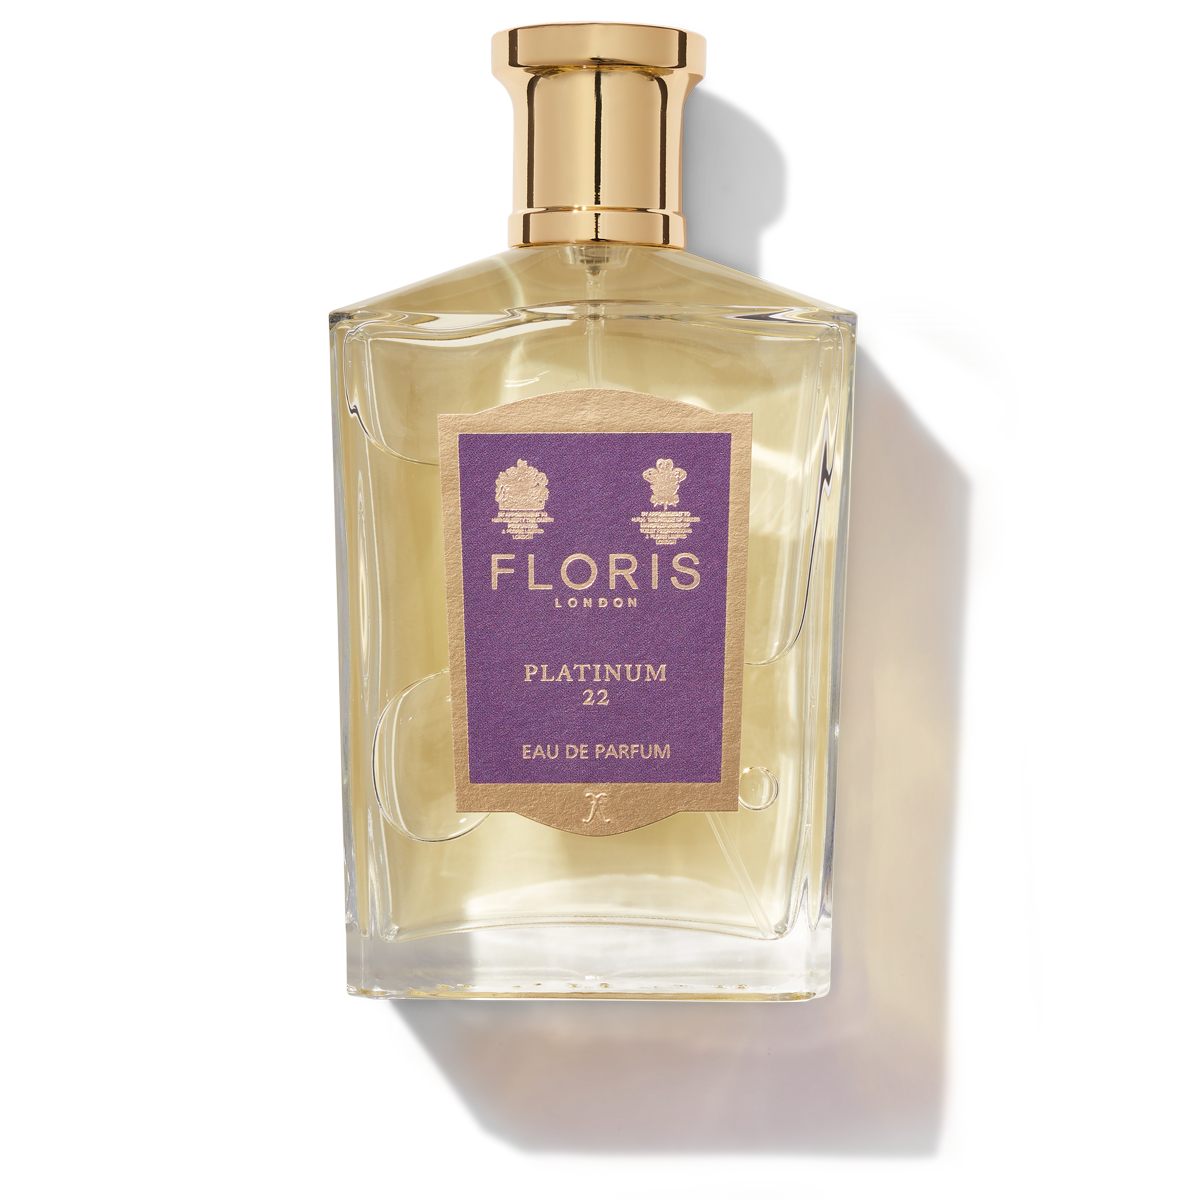 Floris London Platinum 22 Eau de Parfum 100ml bottle with a purple label 